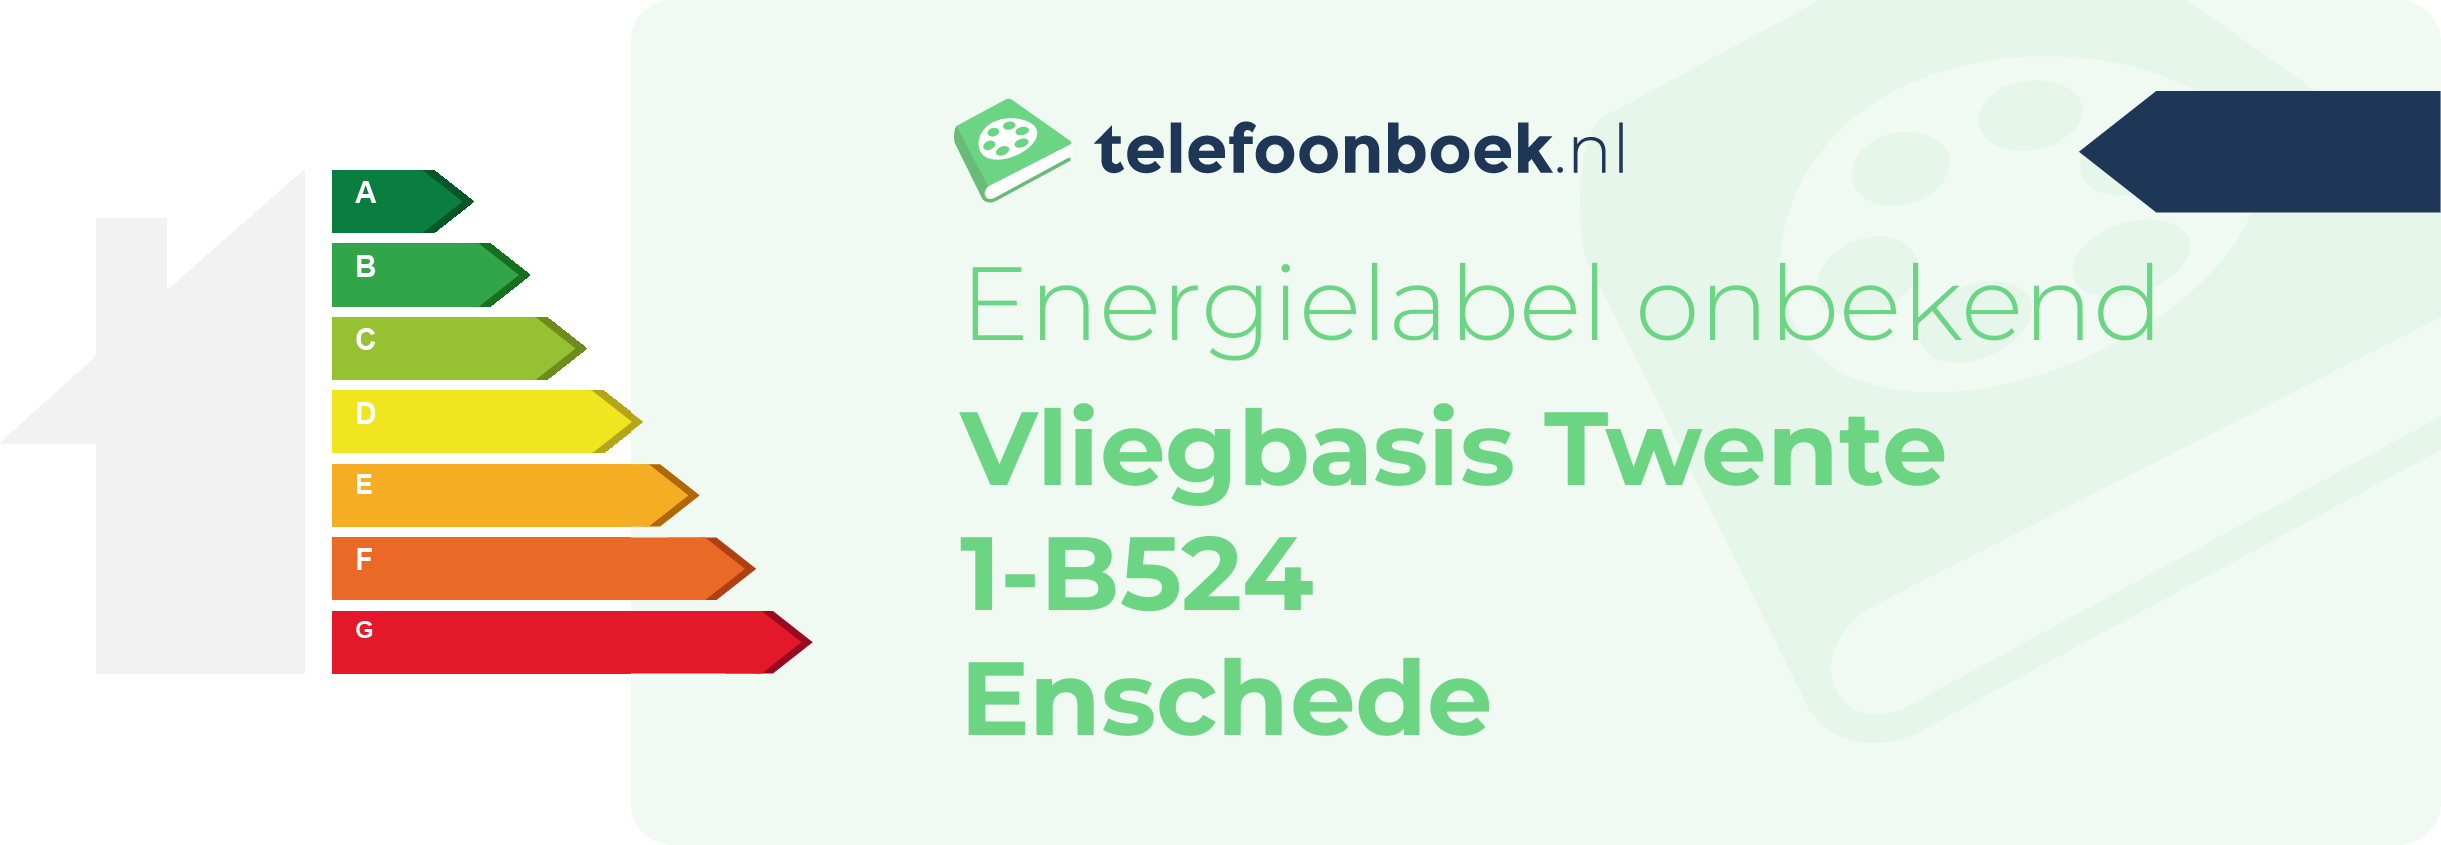 Energielabel Vliegbasis Twente 1-B524 Enschede